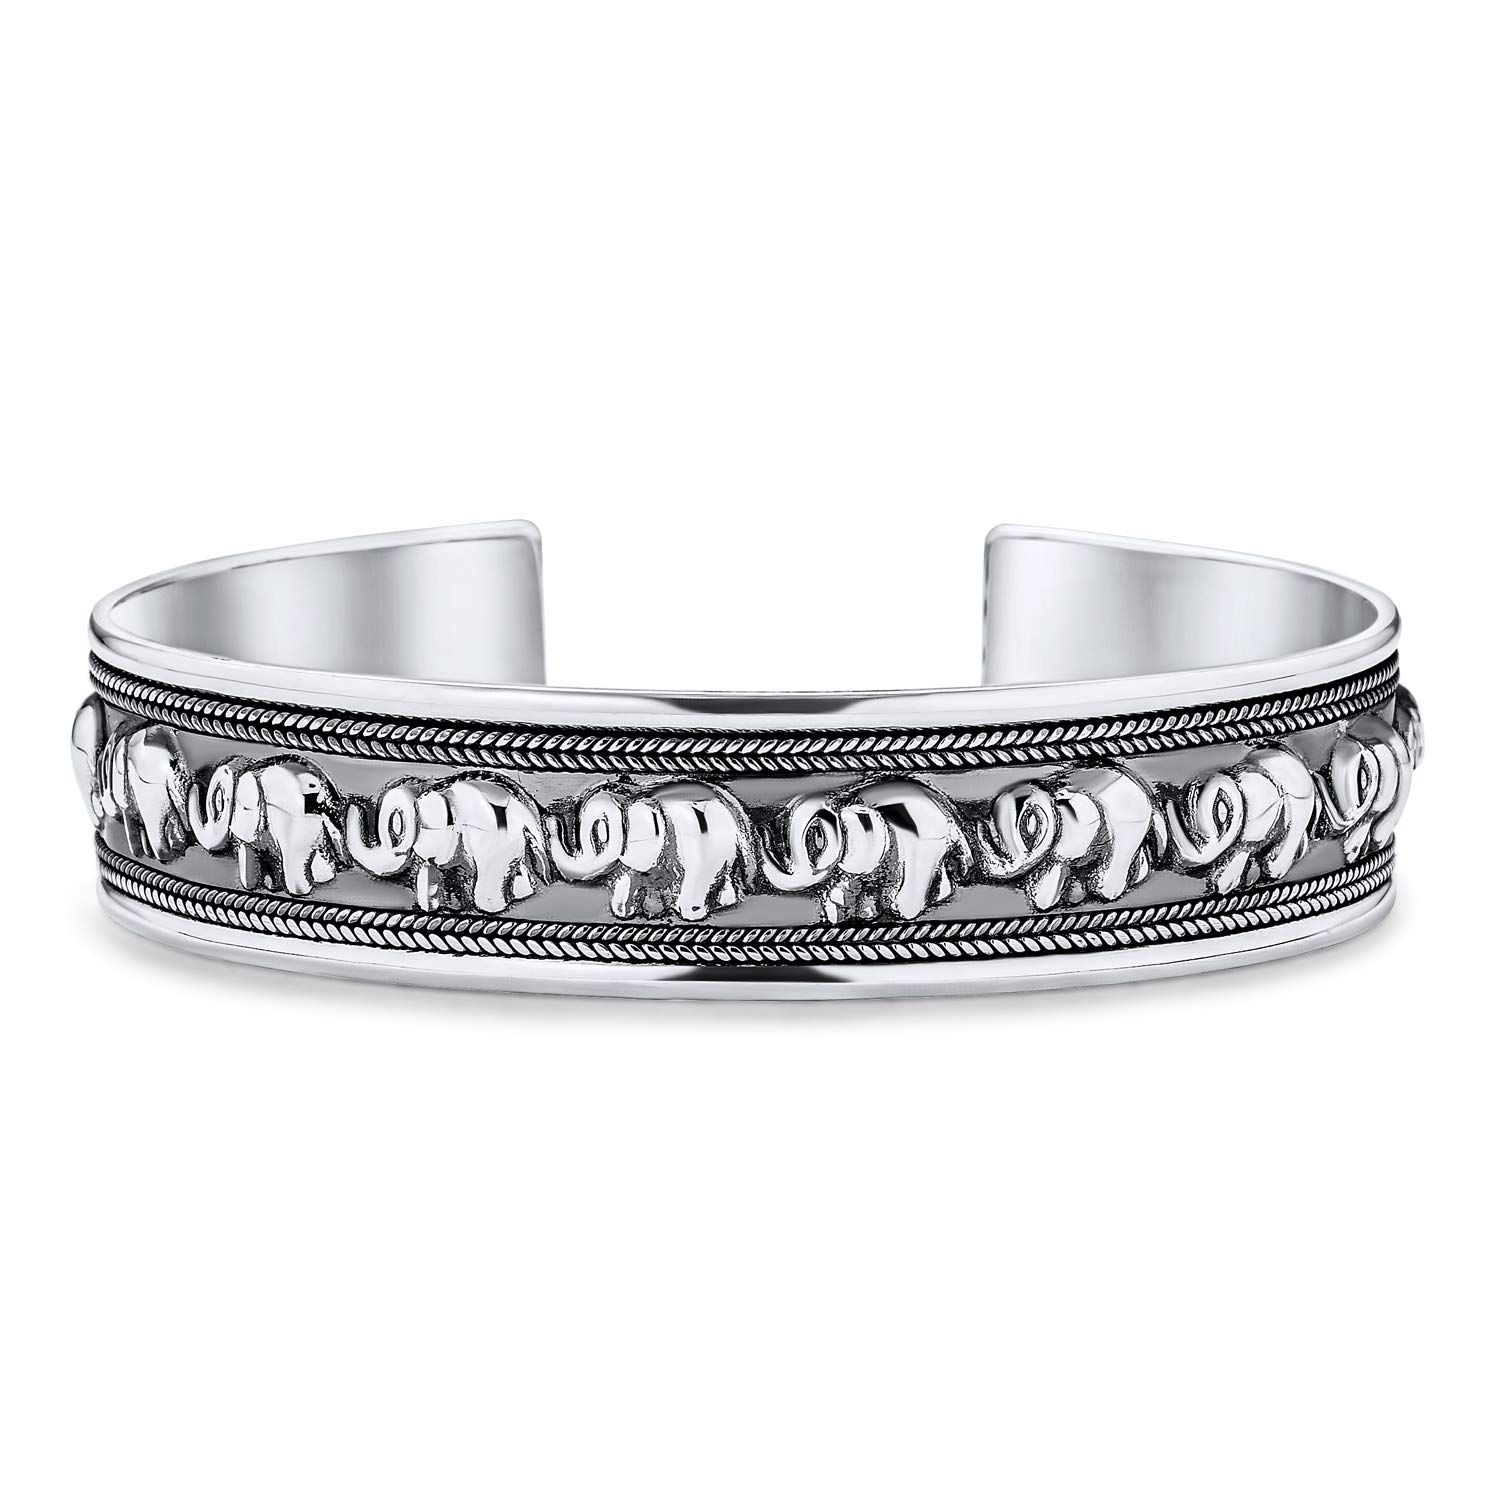 Bling Jewelry Bali Stil Viel Glück Multi Elephant Armreif Manschette Armband Für Frauen Massiv Schwer Oxidiert .925 Sterling Silber